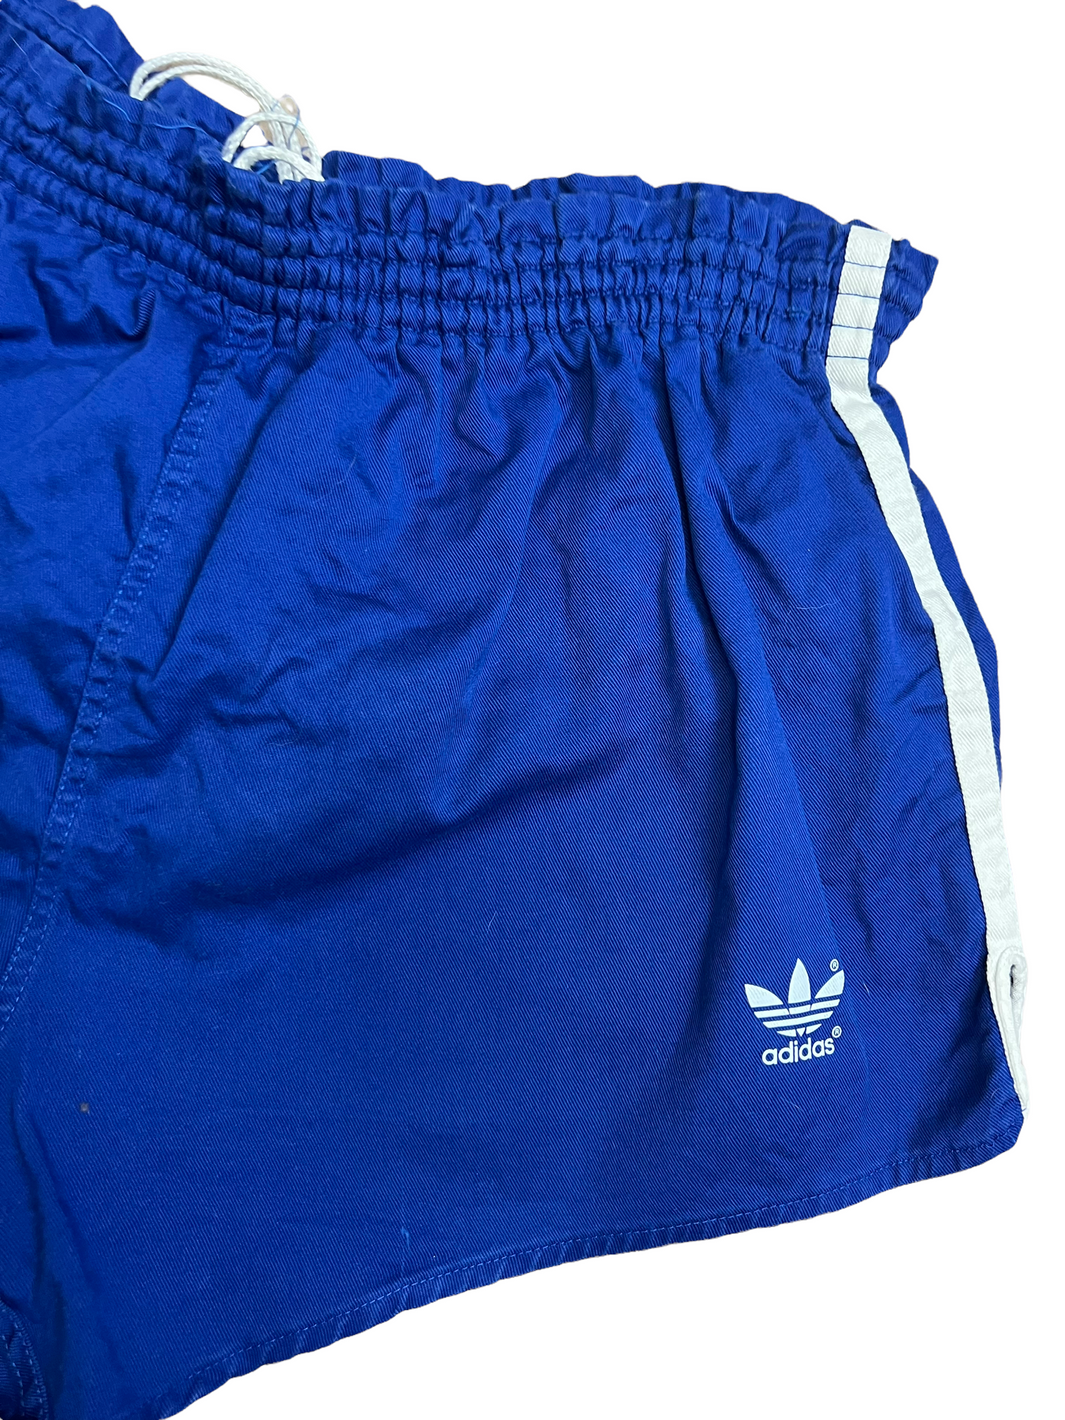 Adidas Shorts 90s